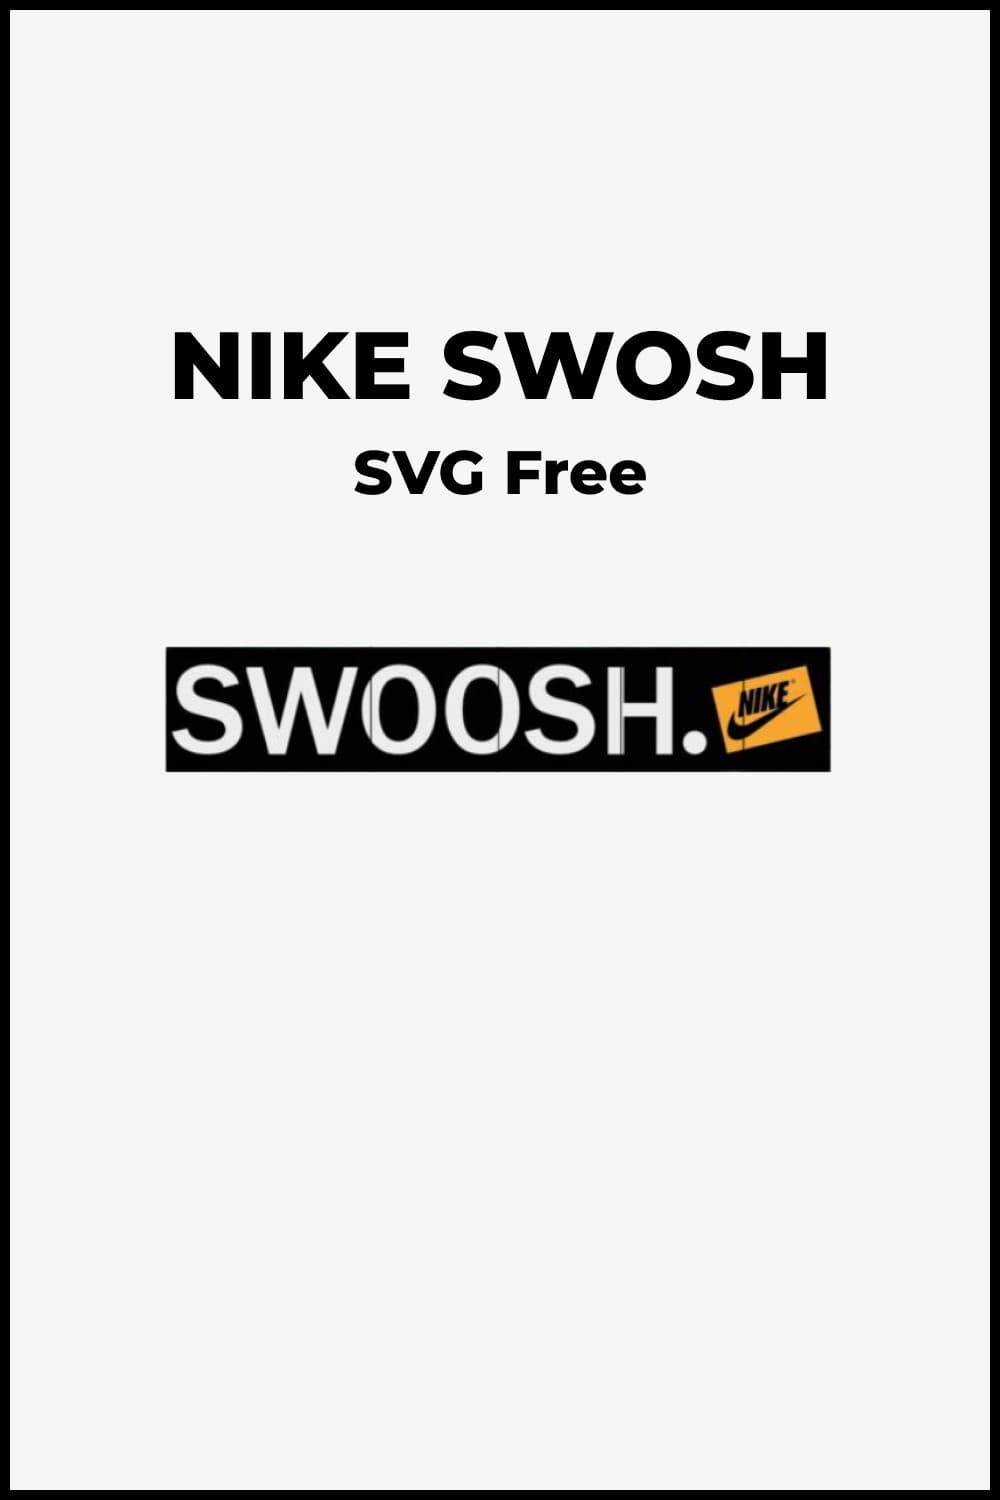 Swoosh letter SVG Design, Nike Svg File, Png, Instant Download